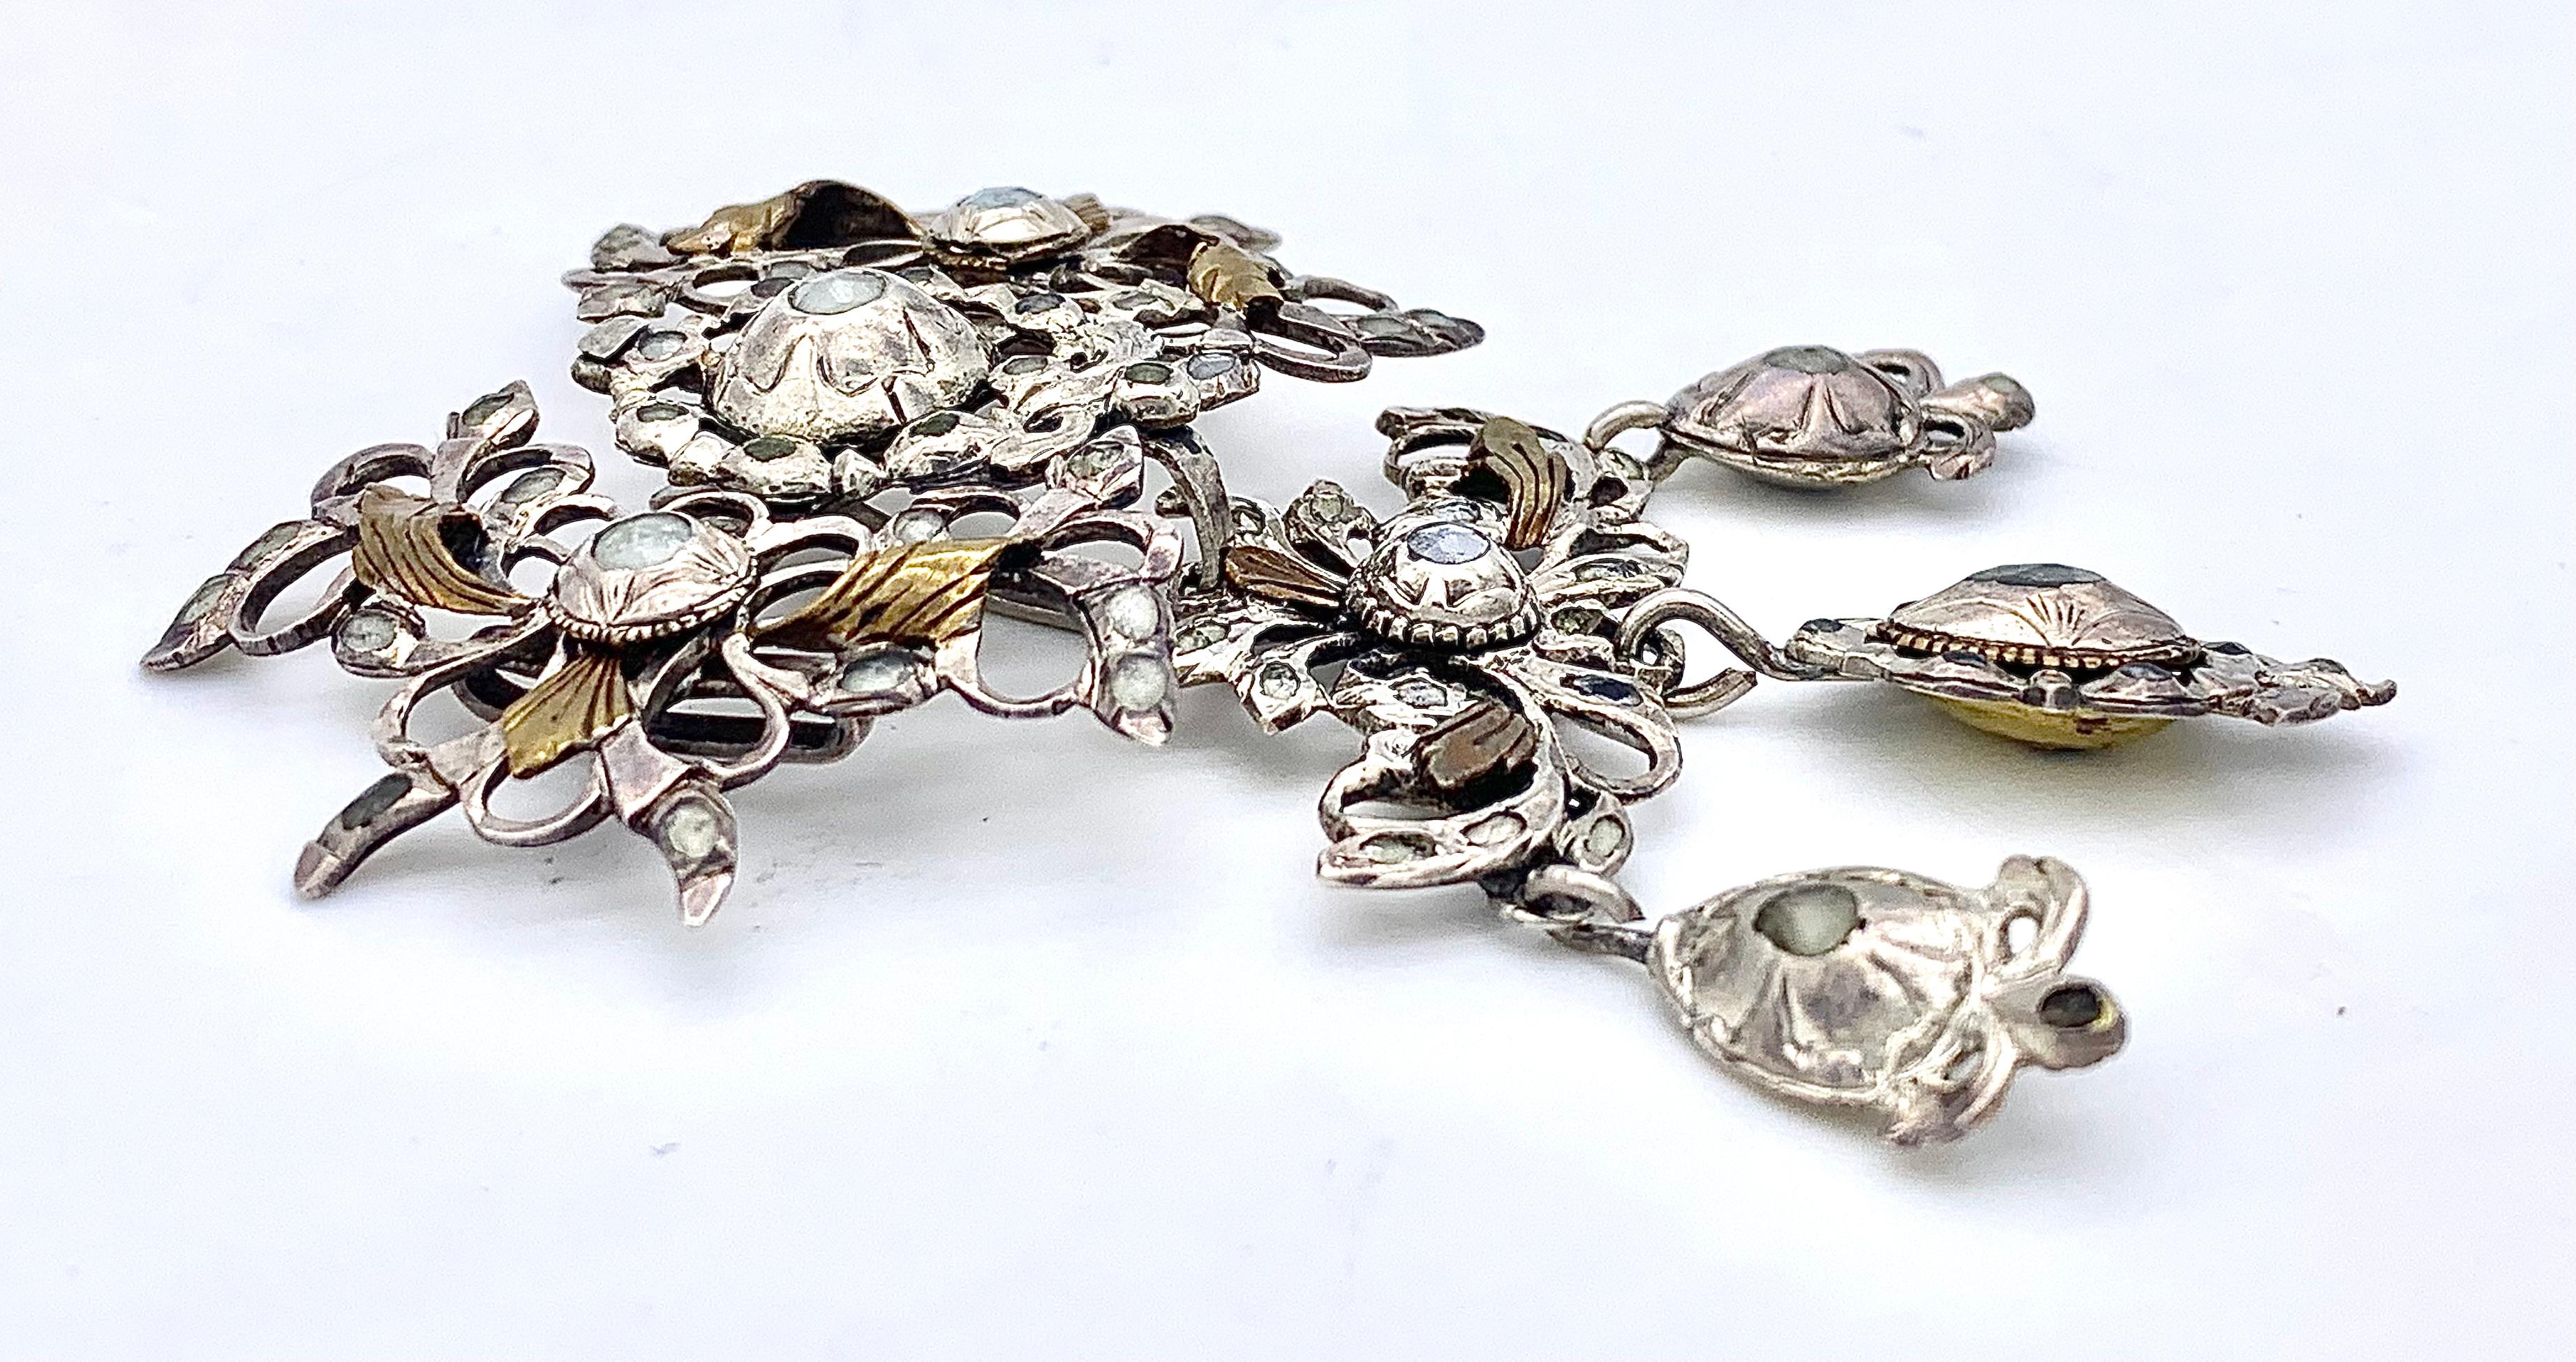 Ce pendentif en argent de taille fine présente un motif percé avec des boutons de fleurs, des rubans, des nœuds et des feuilles dorées. Il est décoré de pierres en pâte dans des sertis fermés. Le plus grand serti fermé au centre de la lame présente